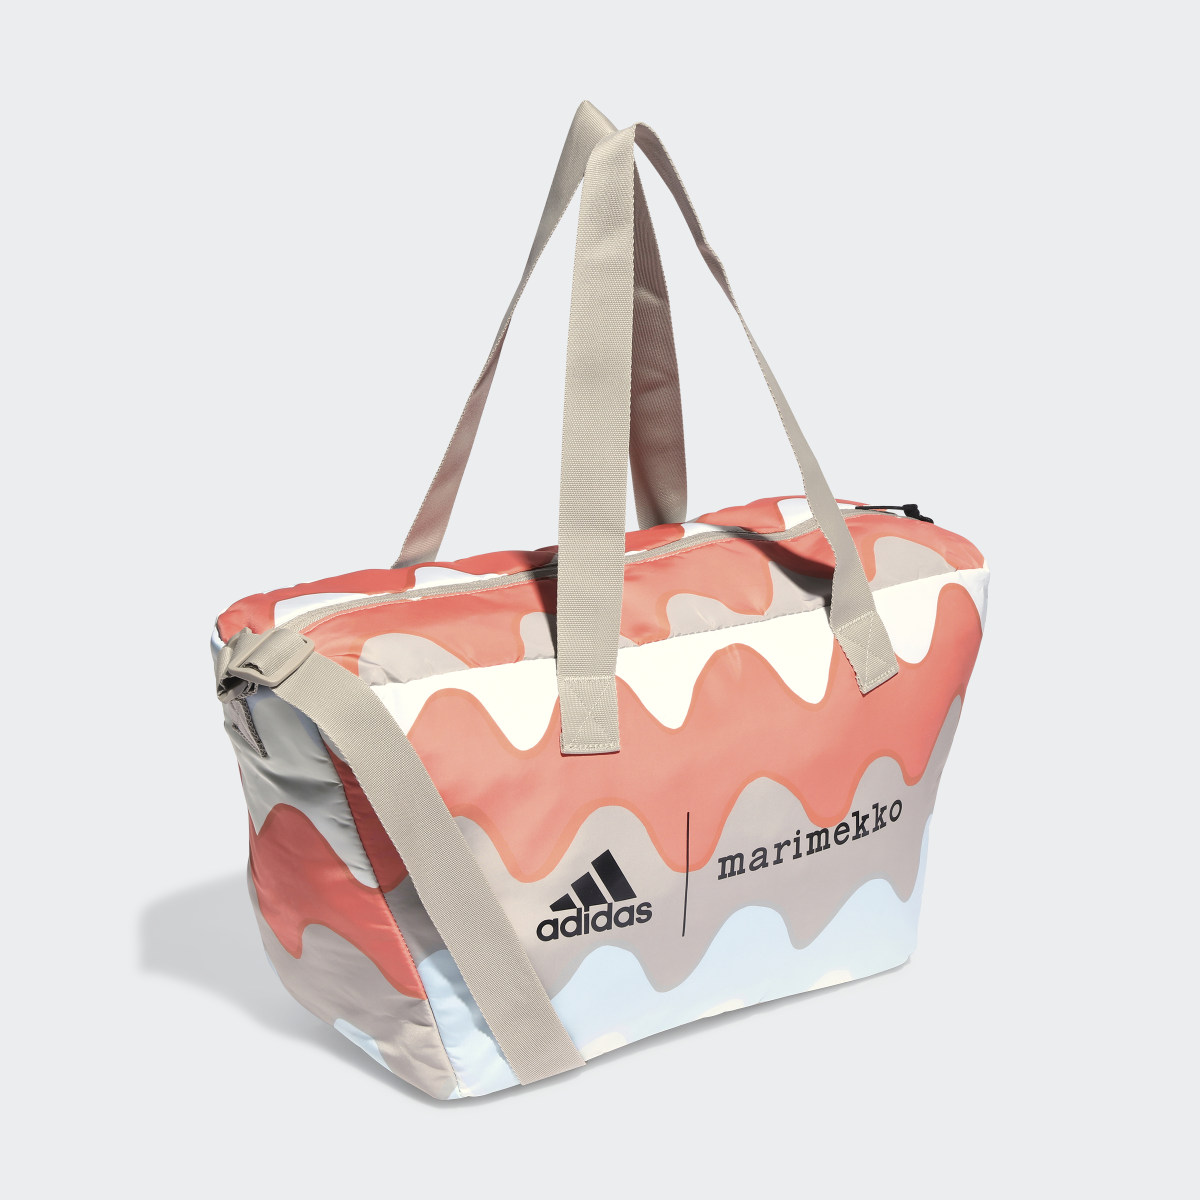 Adidas x Marimekko Shopper Designed 2 Move Training Backpack. 4